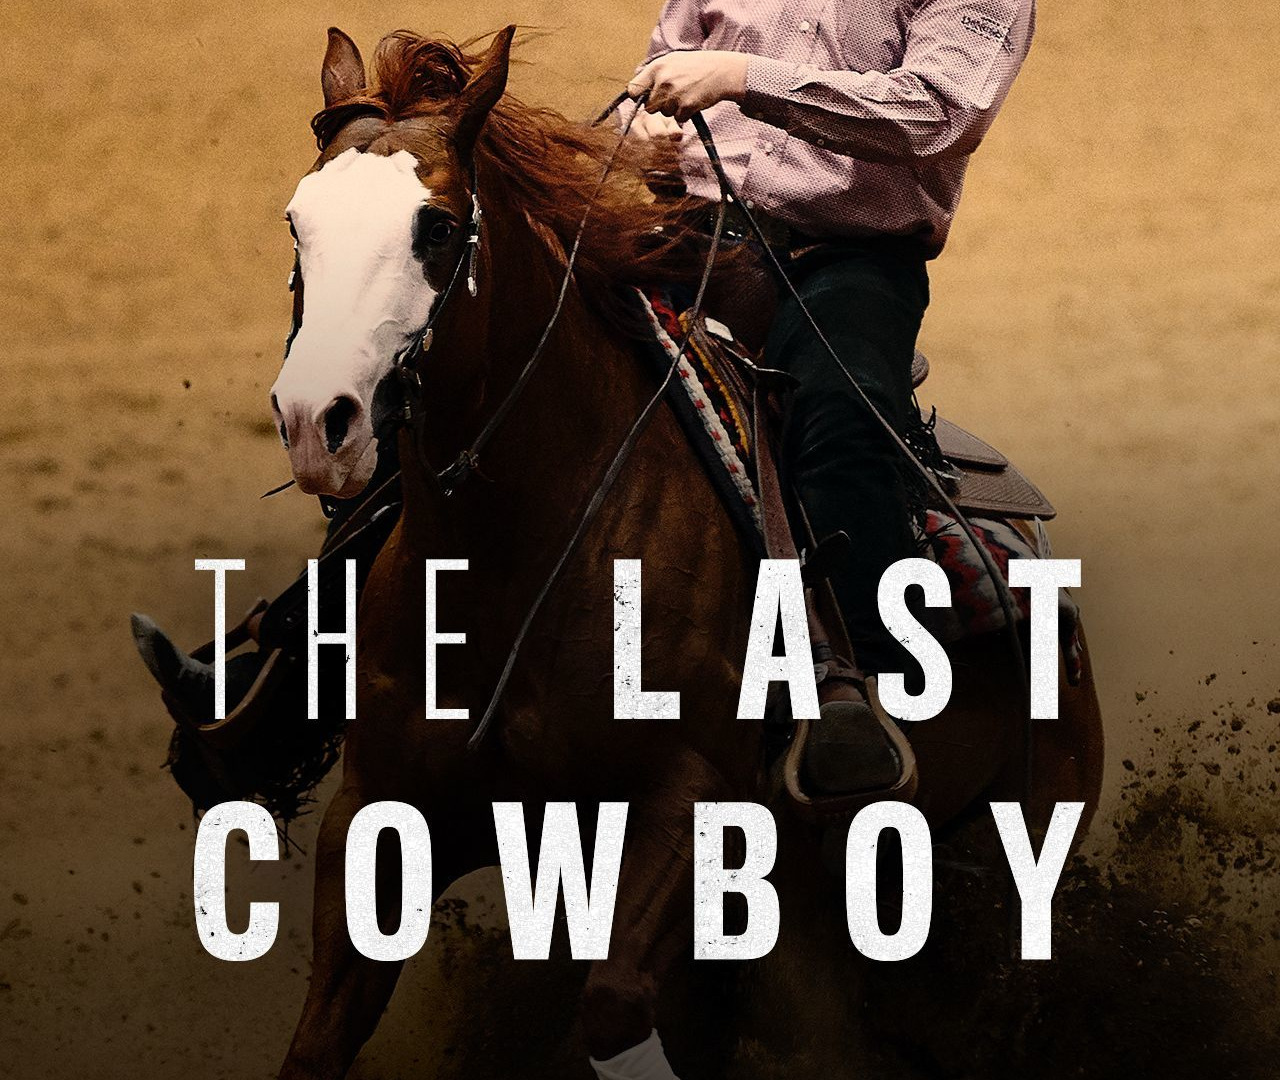 Show The Last Cowboy